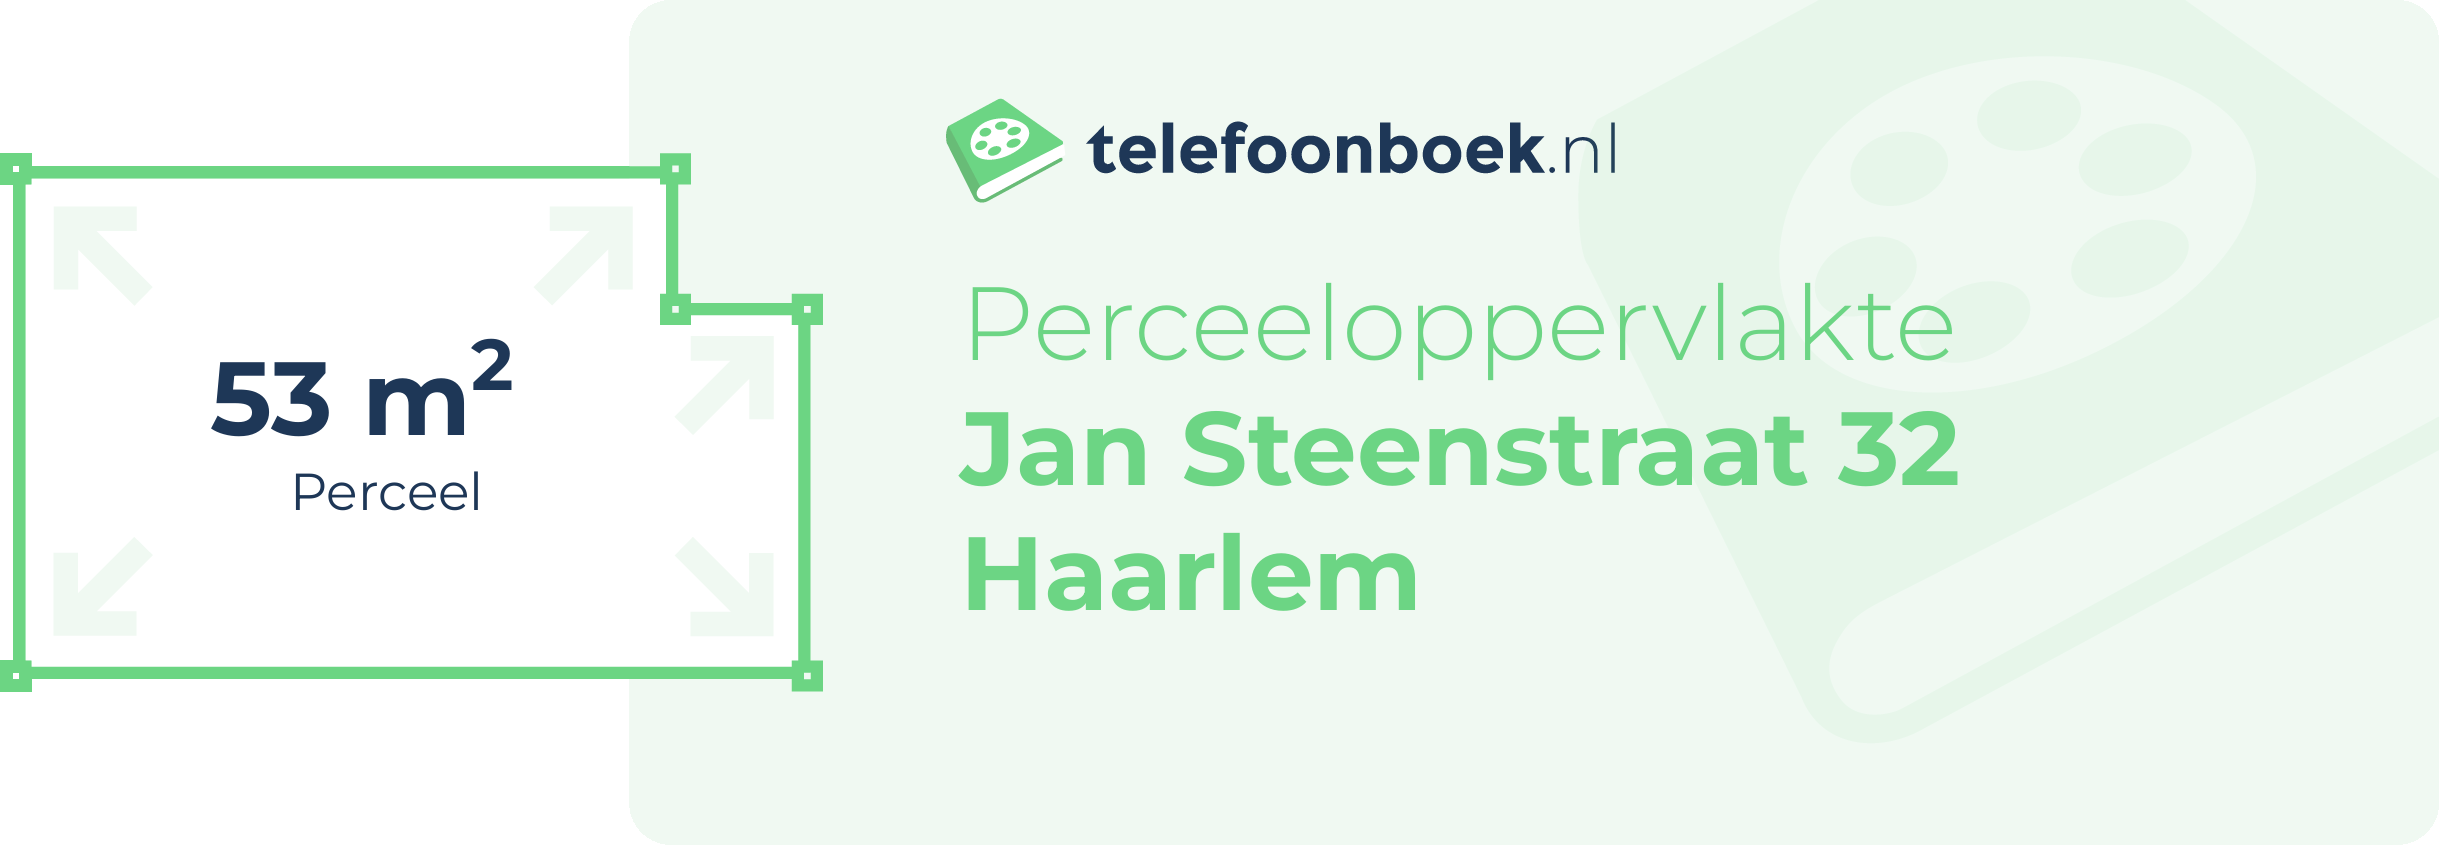 Perceeloppervlakte Jan Steenstraat 32 Haarlem